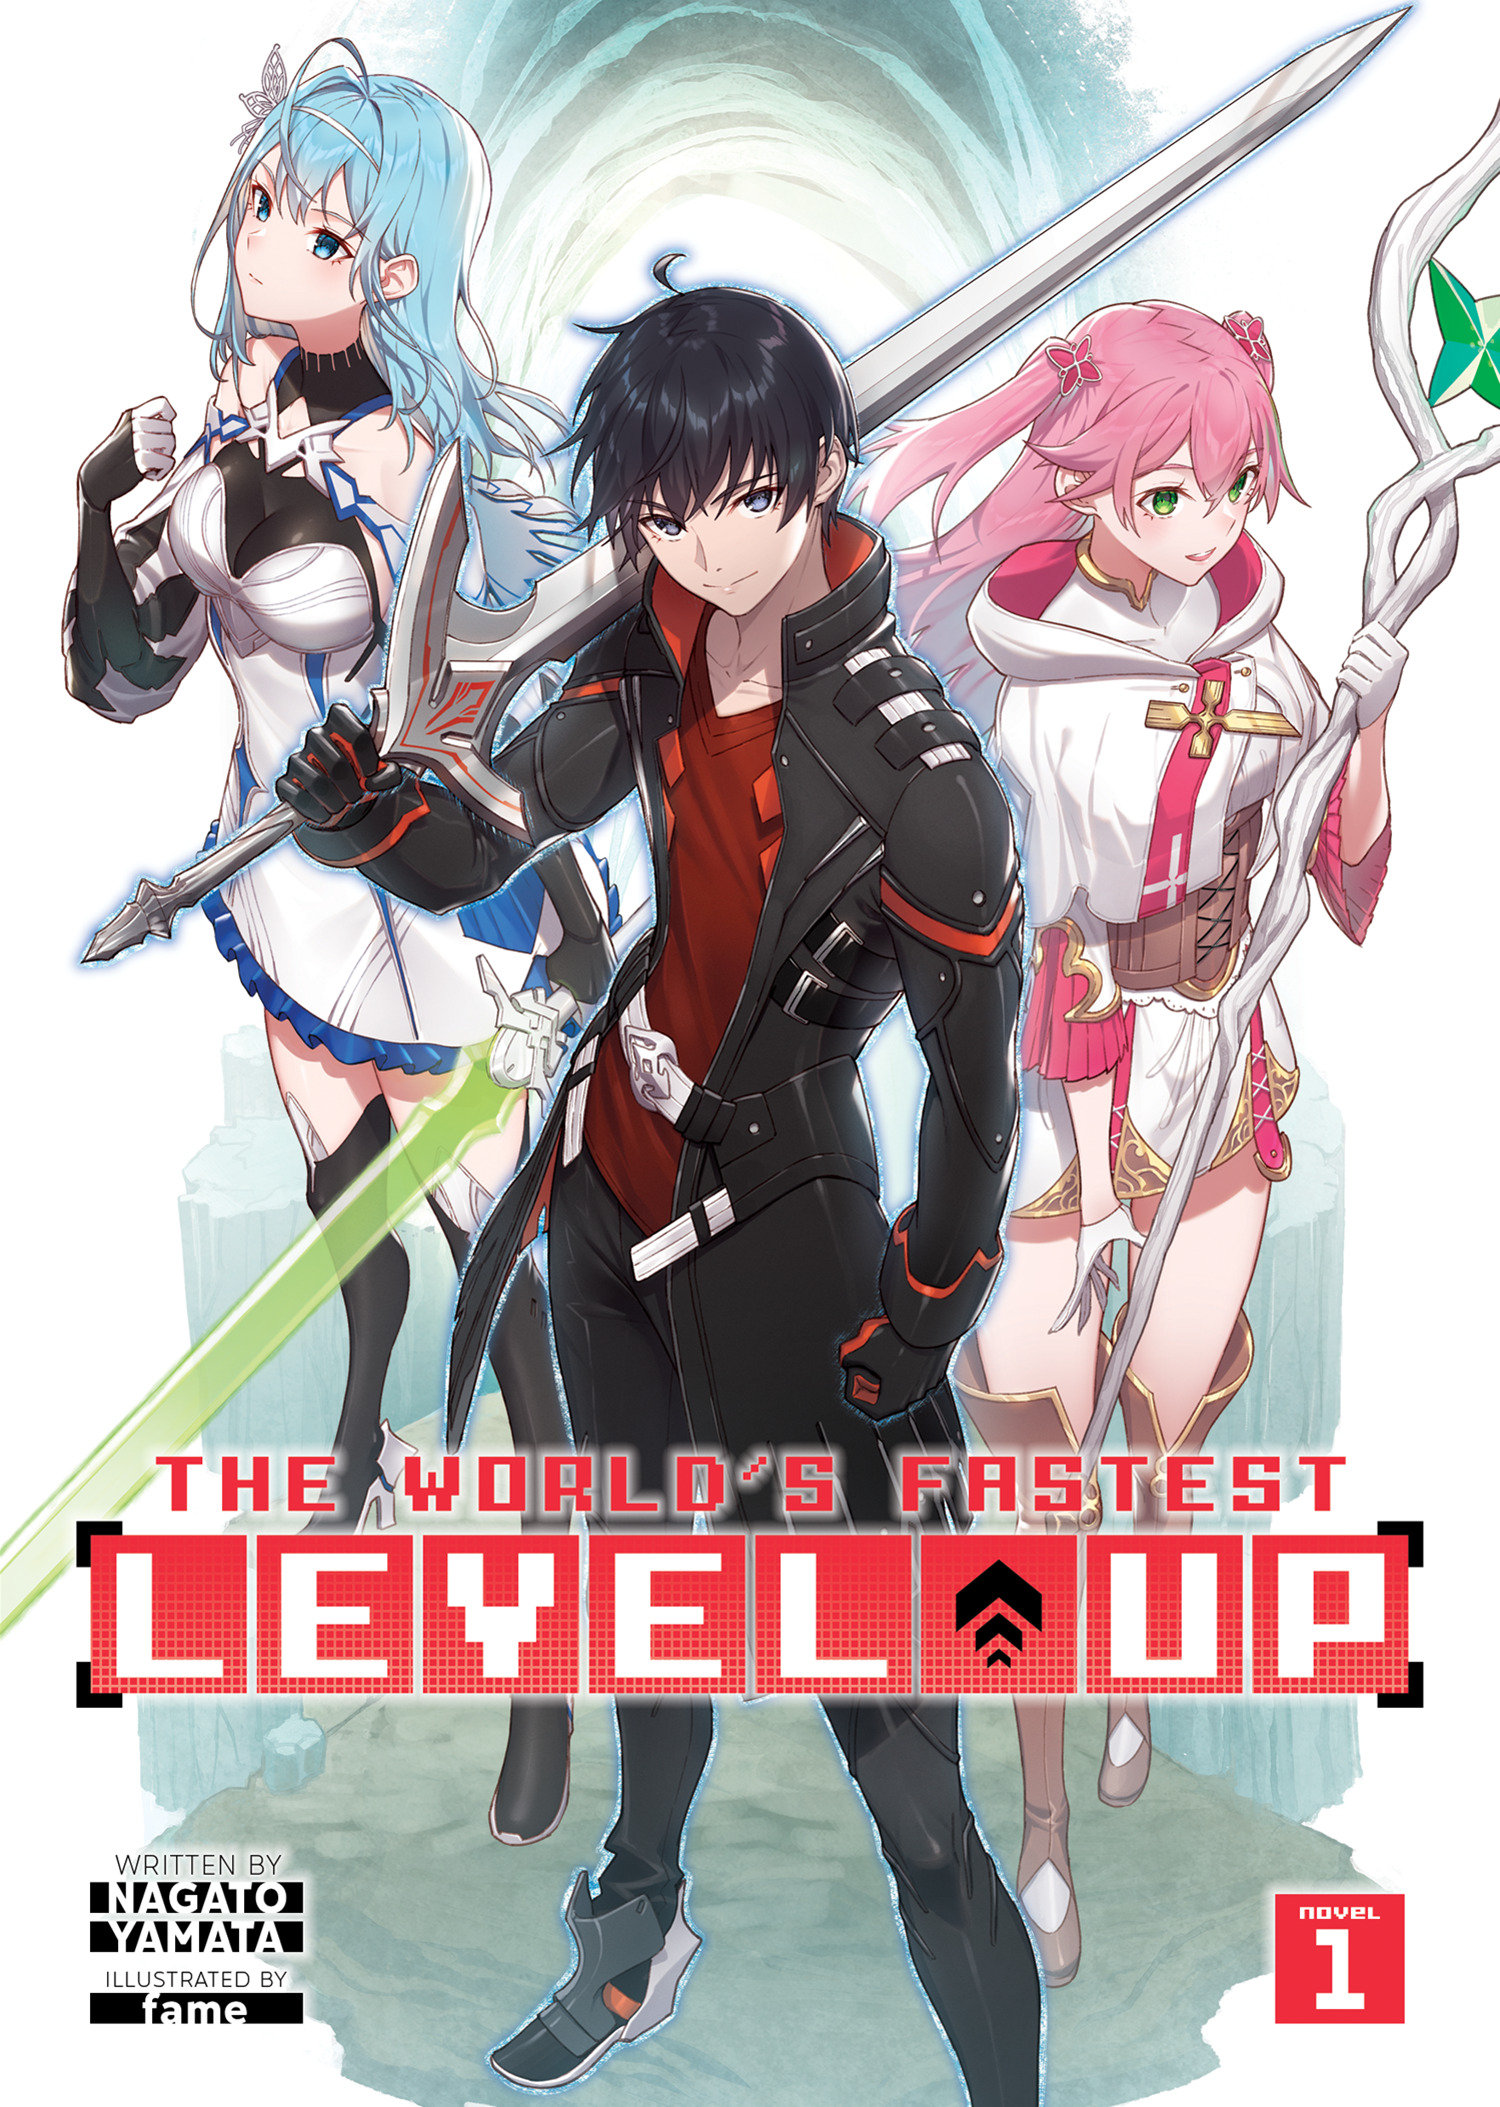 World's Fastest Level Up! Light Novel Volume 1